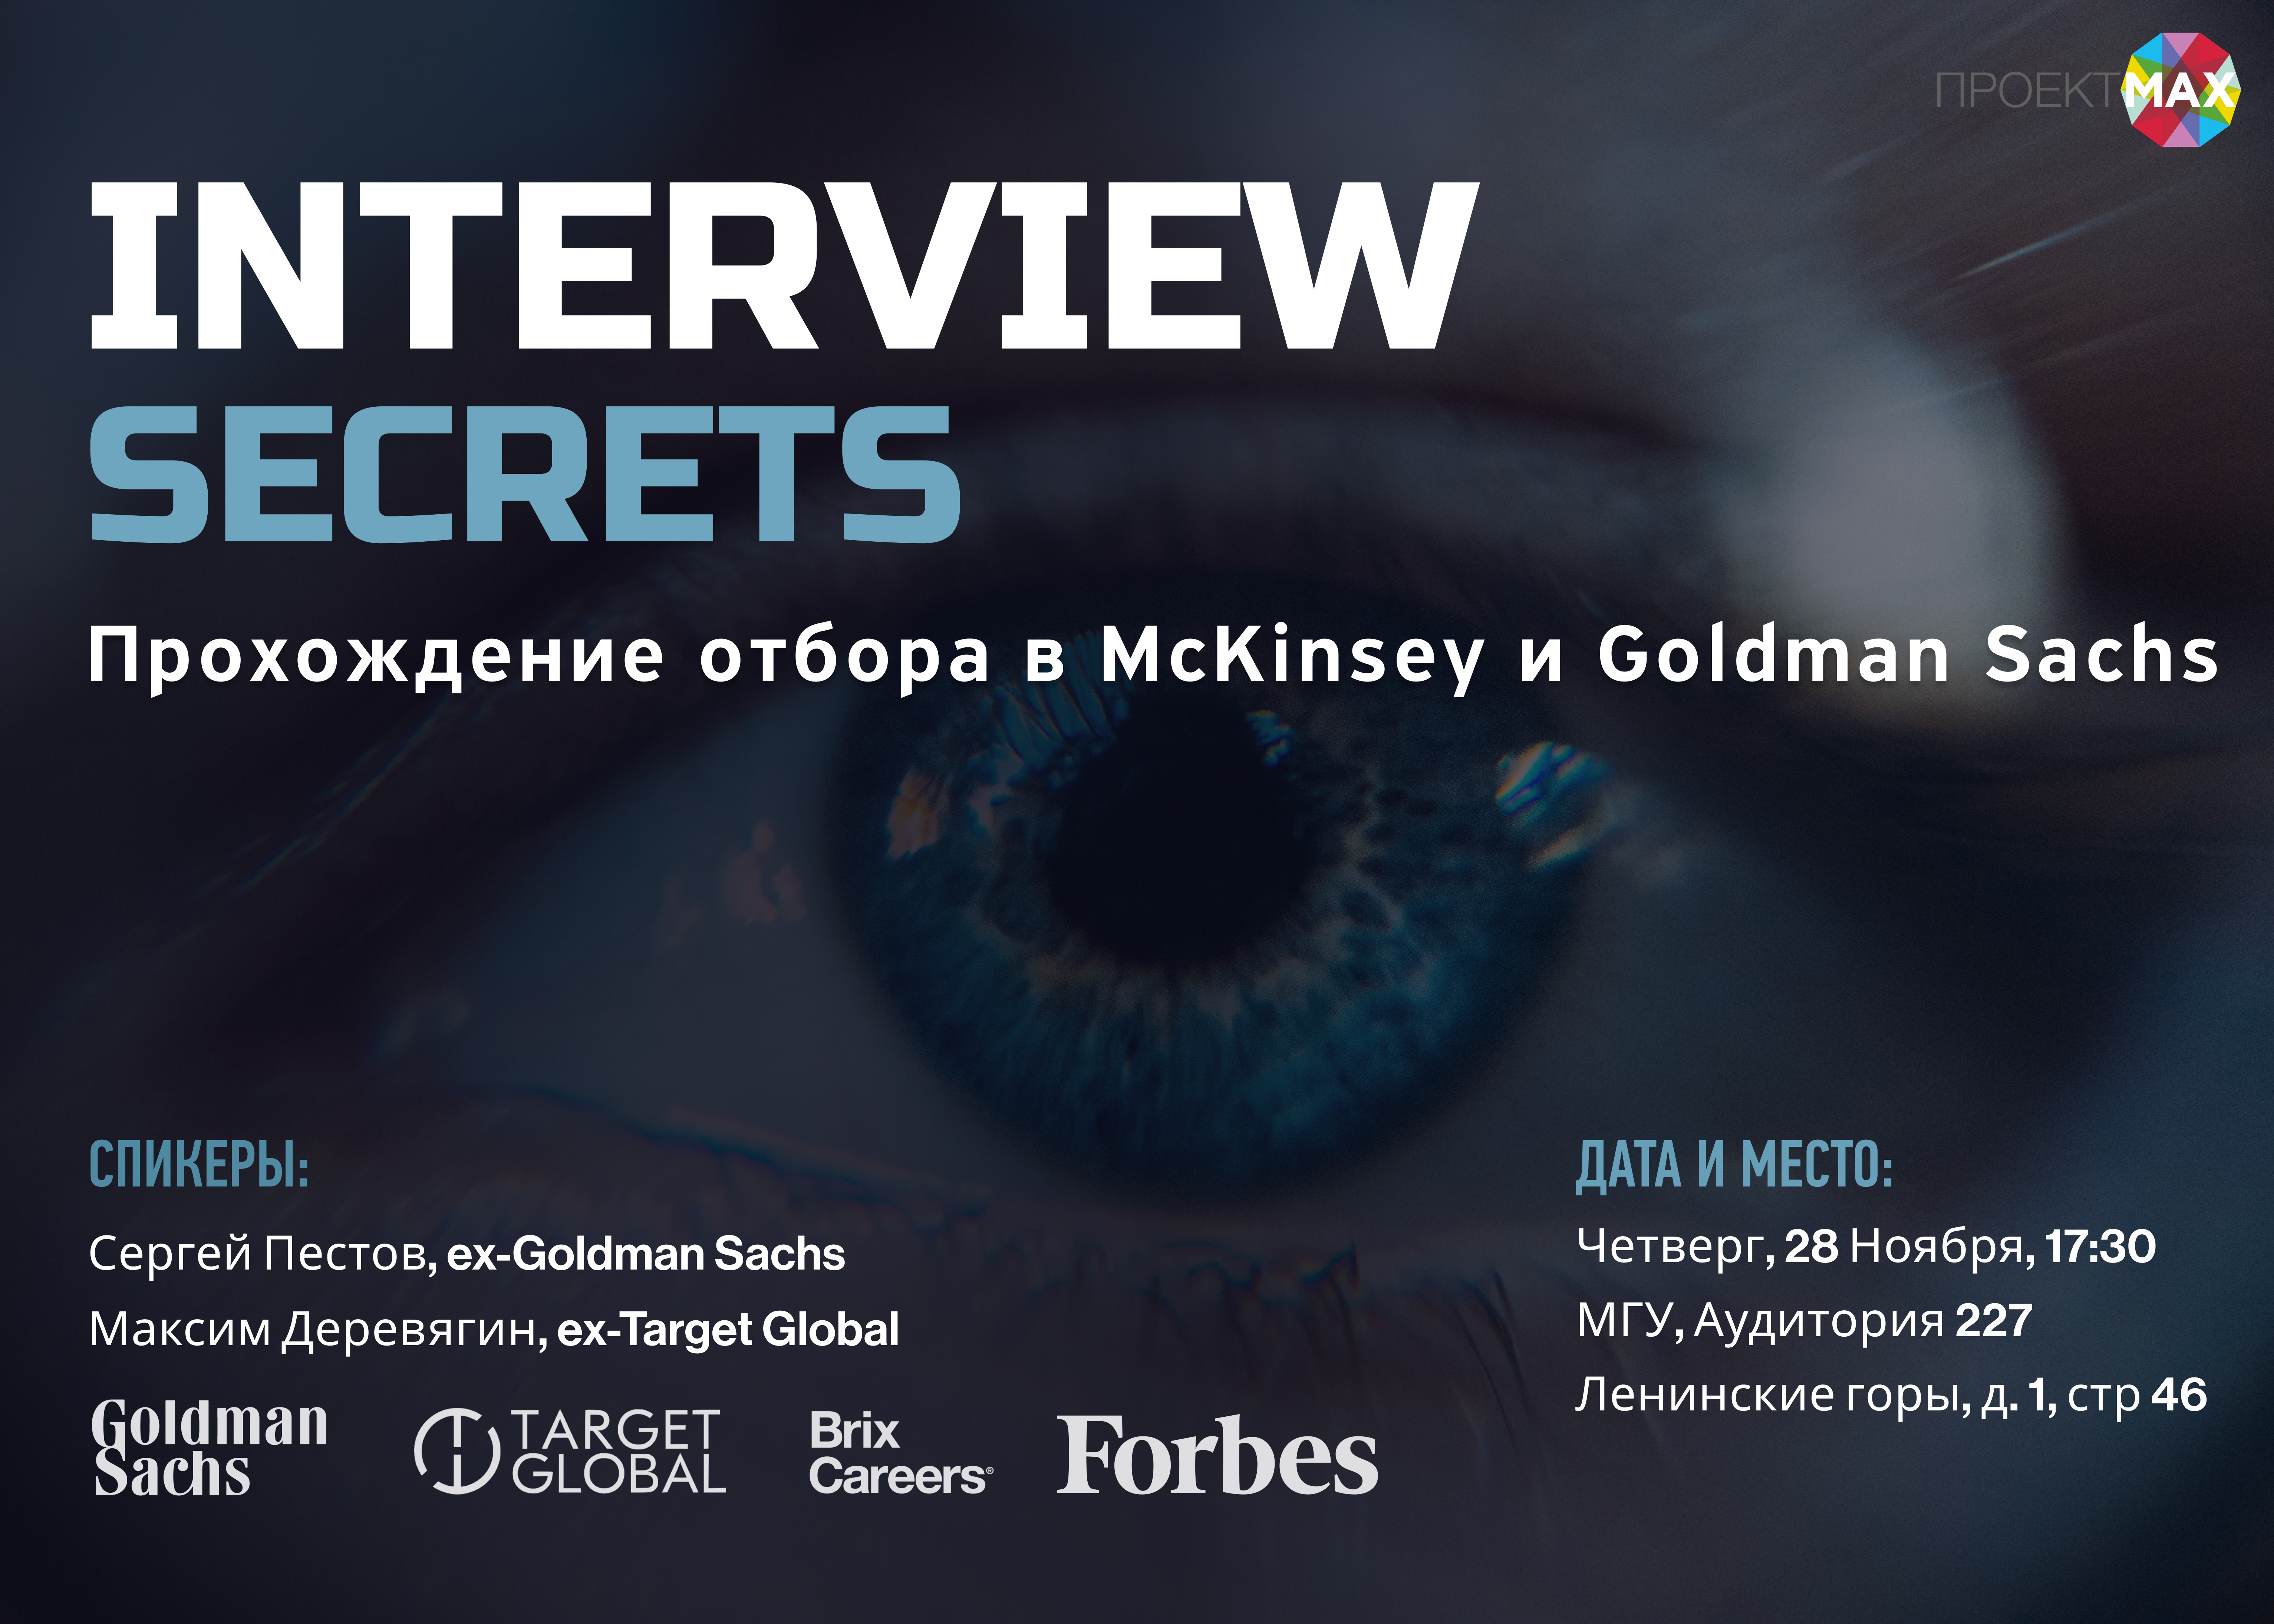 Проект МАХ: Interview Secrets. Прохождение отбора в McKinsey и Goldman Sachs